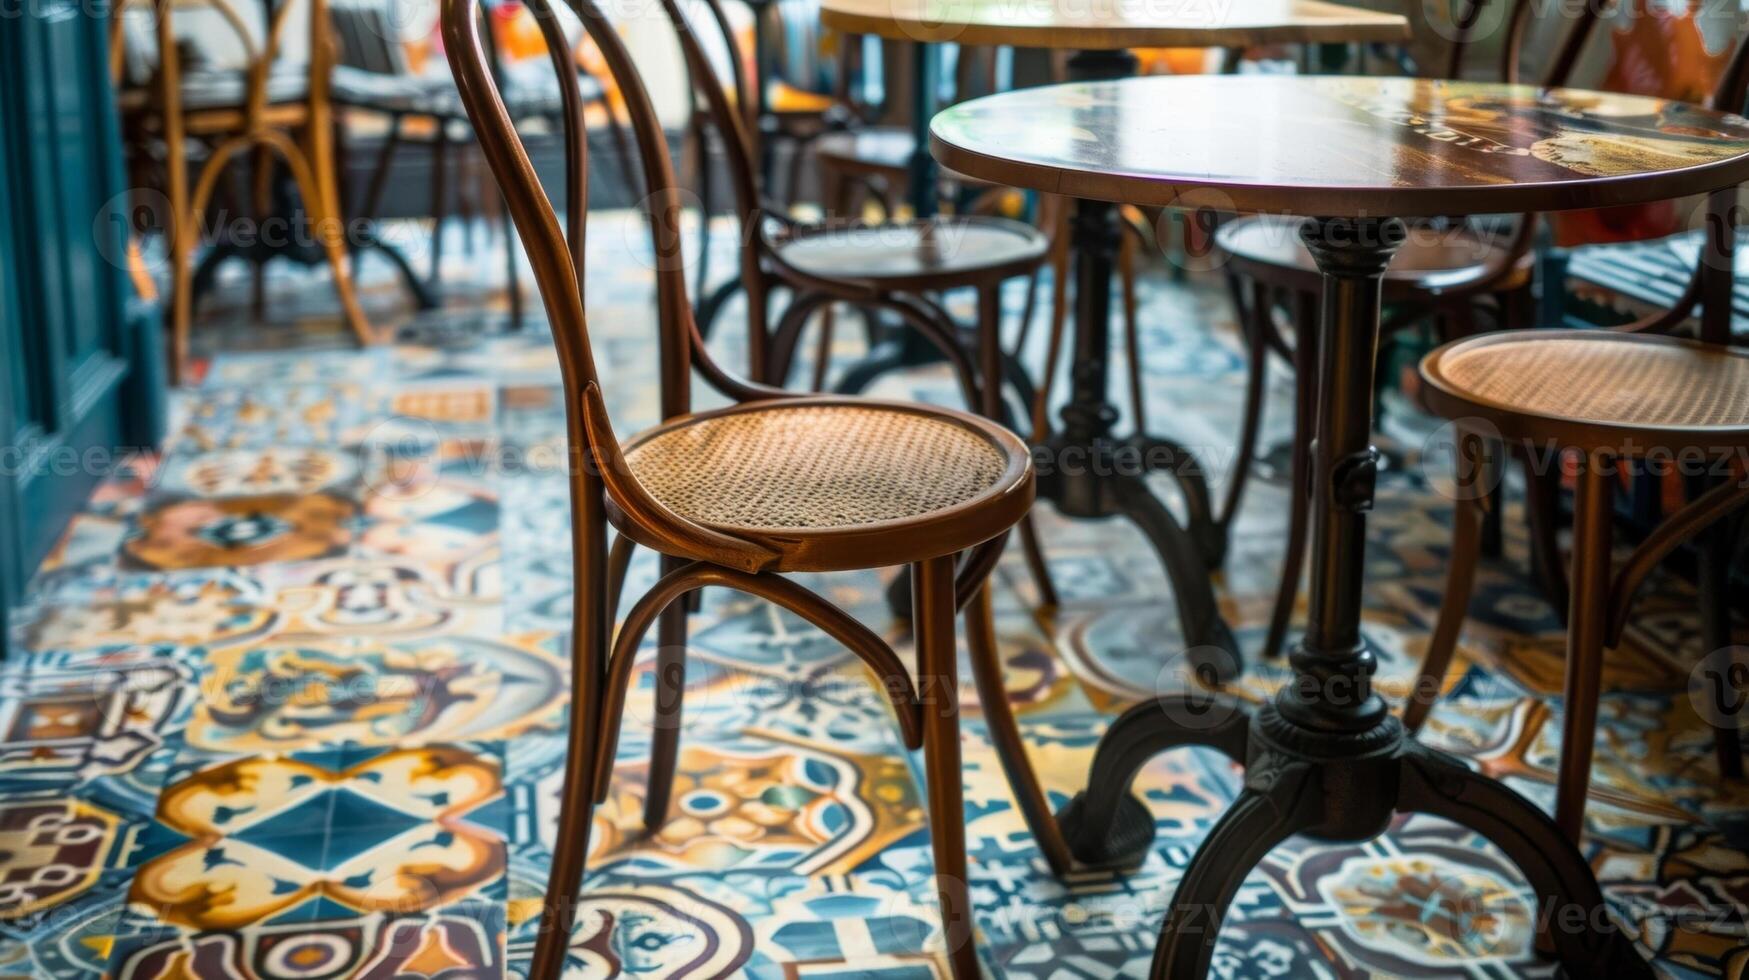 ein charmant Cafe mit ein Fußboden geschmückt im ein Sortiment von handgemalt Keramik Fliesen Erstellen ein gemütlich und einladend Atmosphäre. foto